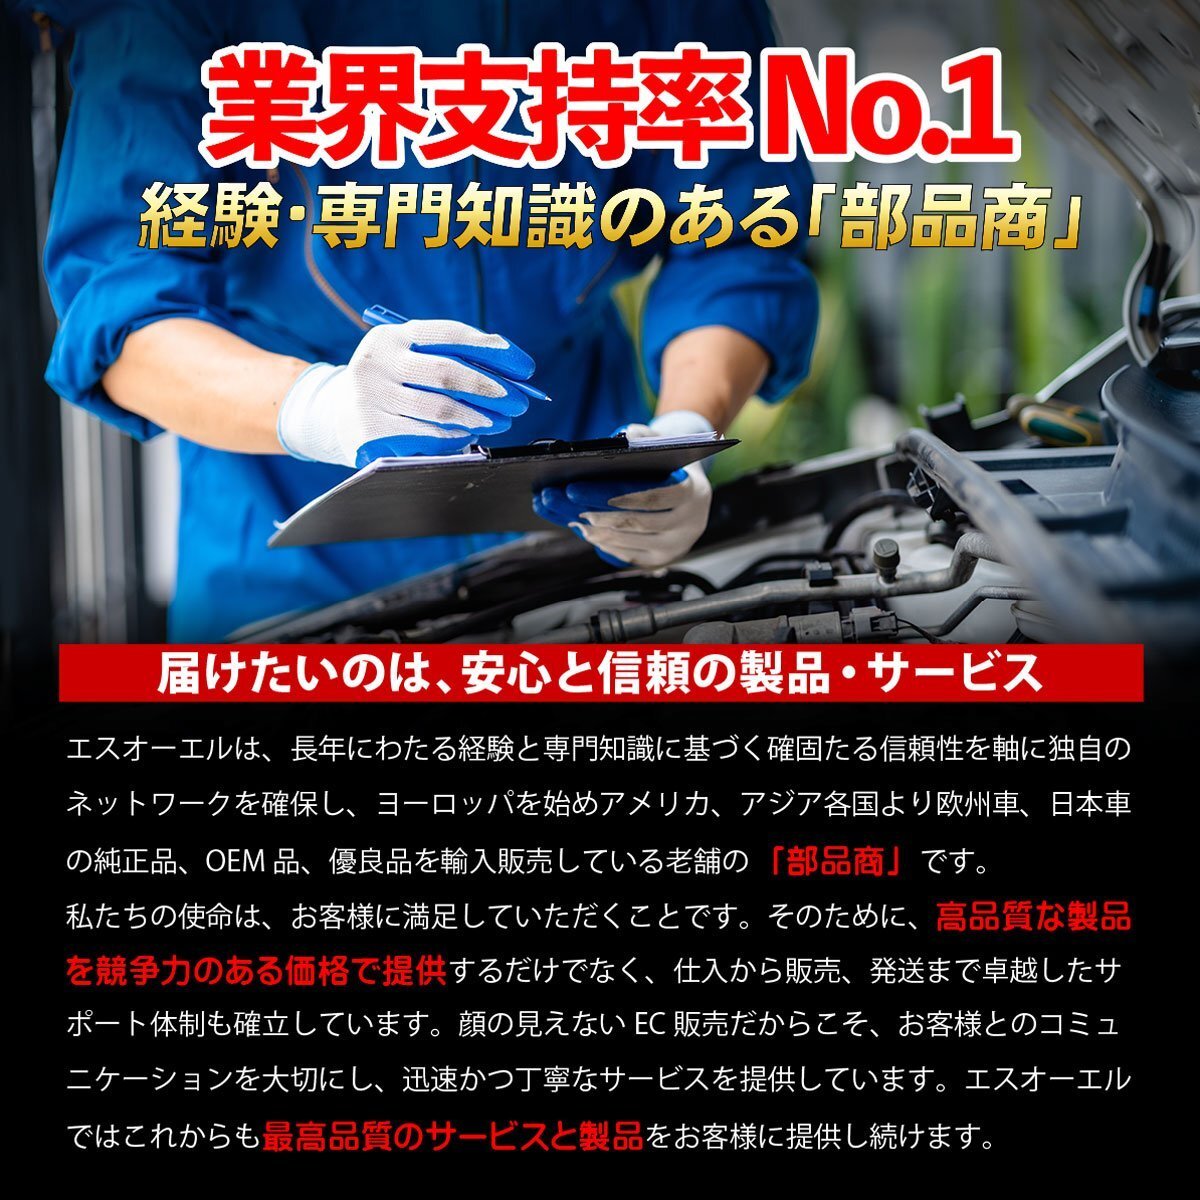  Bluebird Miyacomiyako clutch release repair kit CK-N211 ENU13 ENU14 EU13 EU14 HNU13 HNU14 HU13 HU14 QU14 SU14 U13 FG10